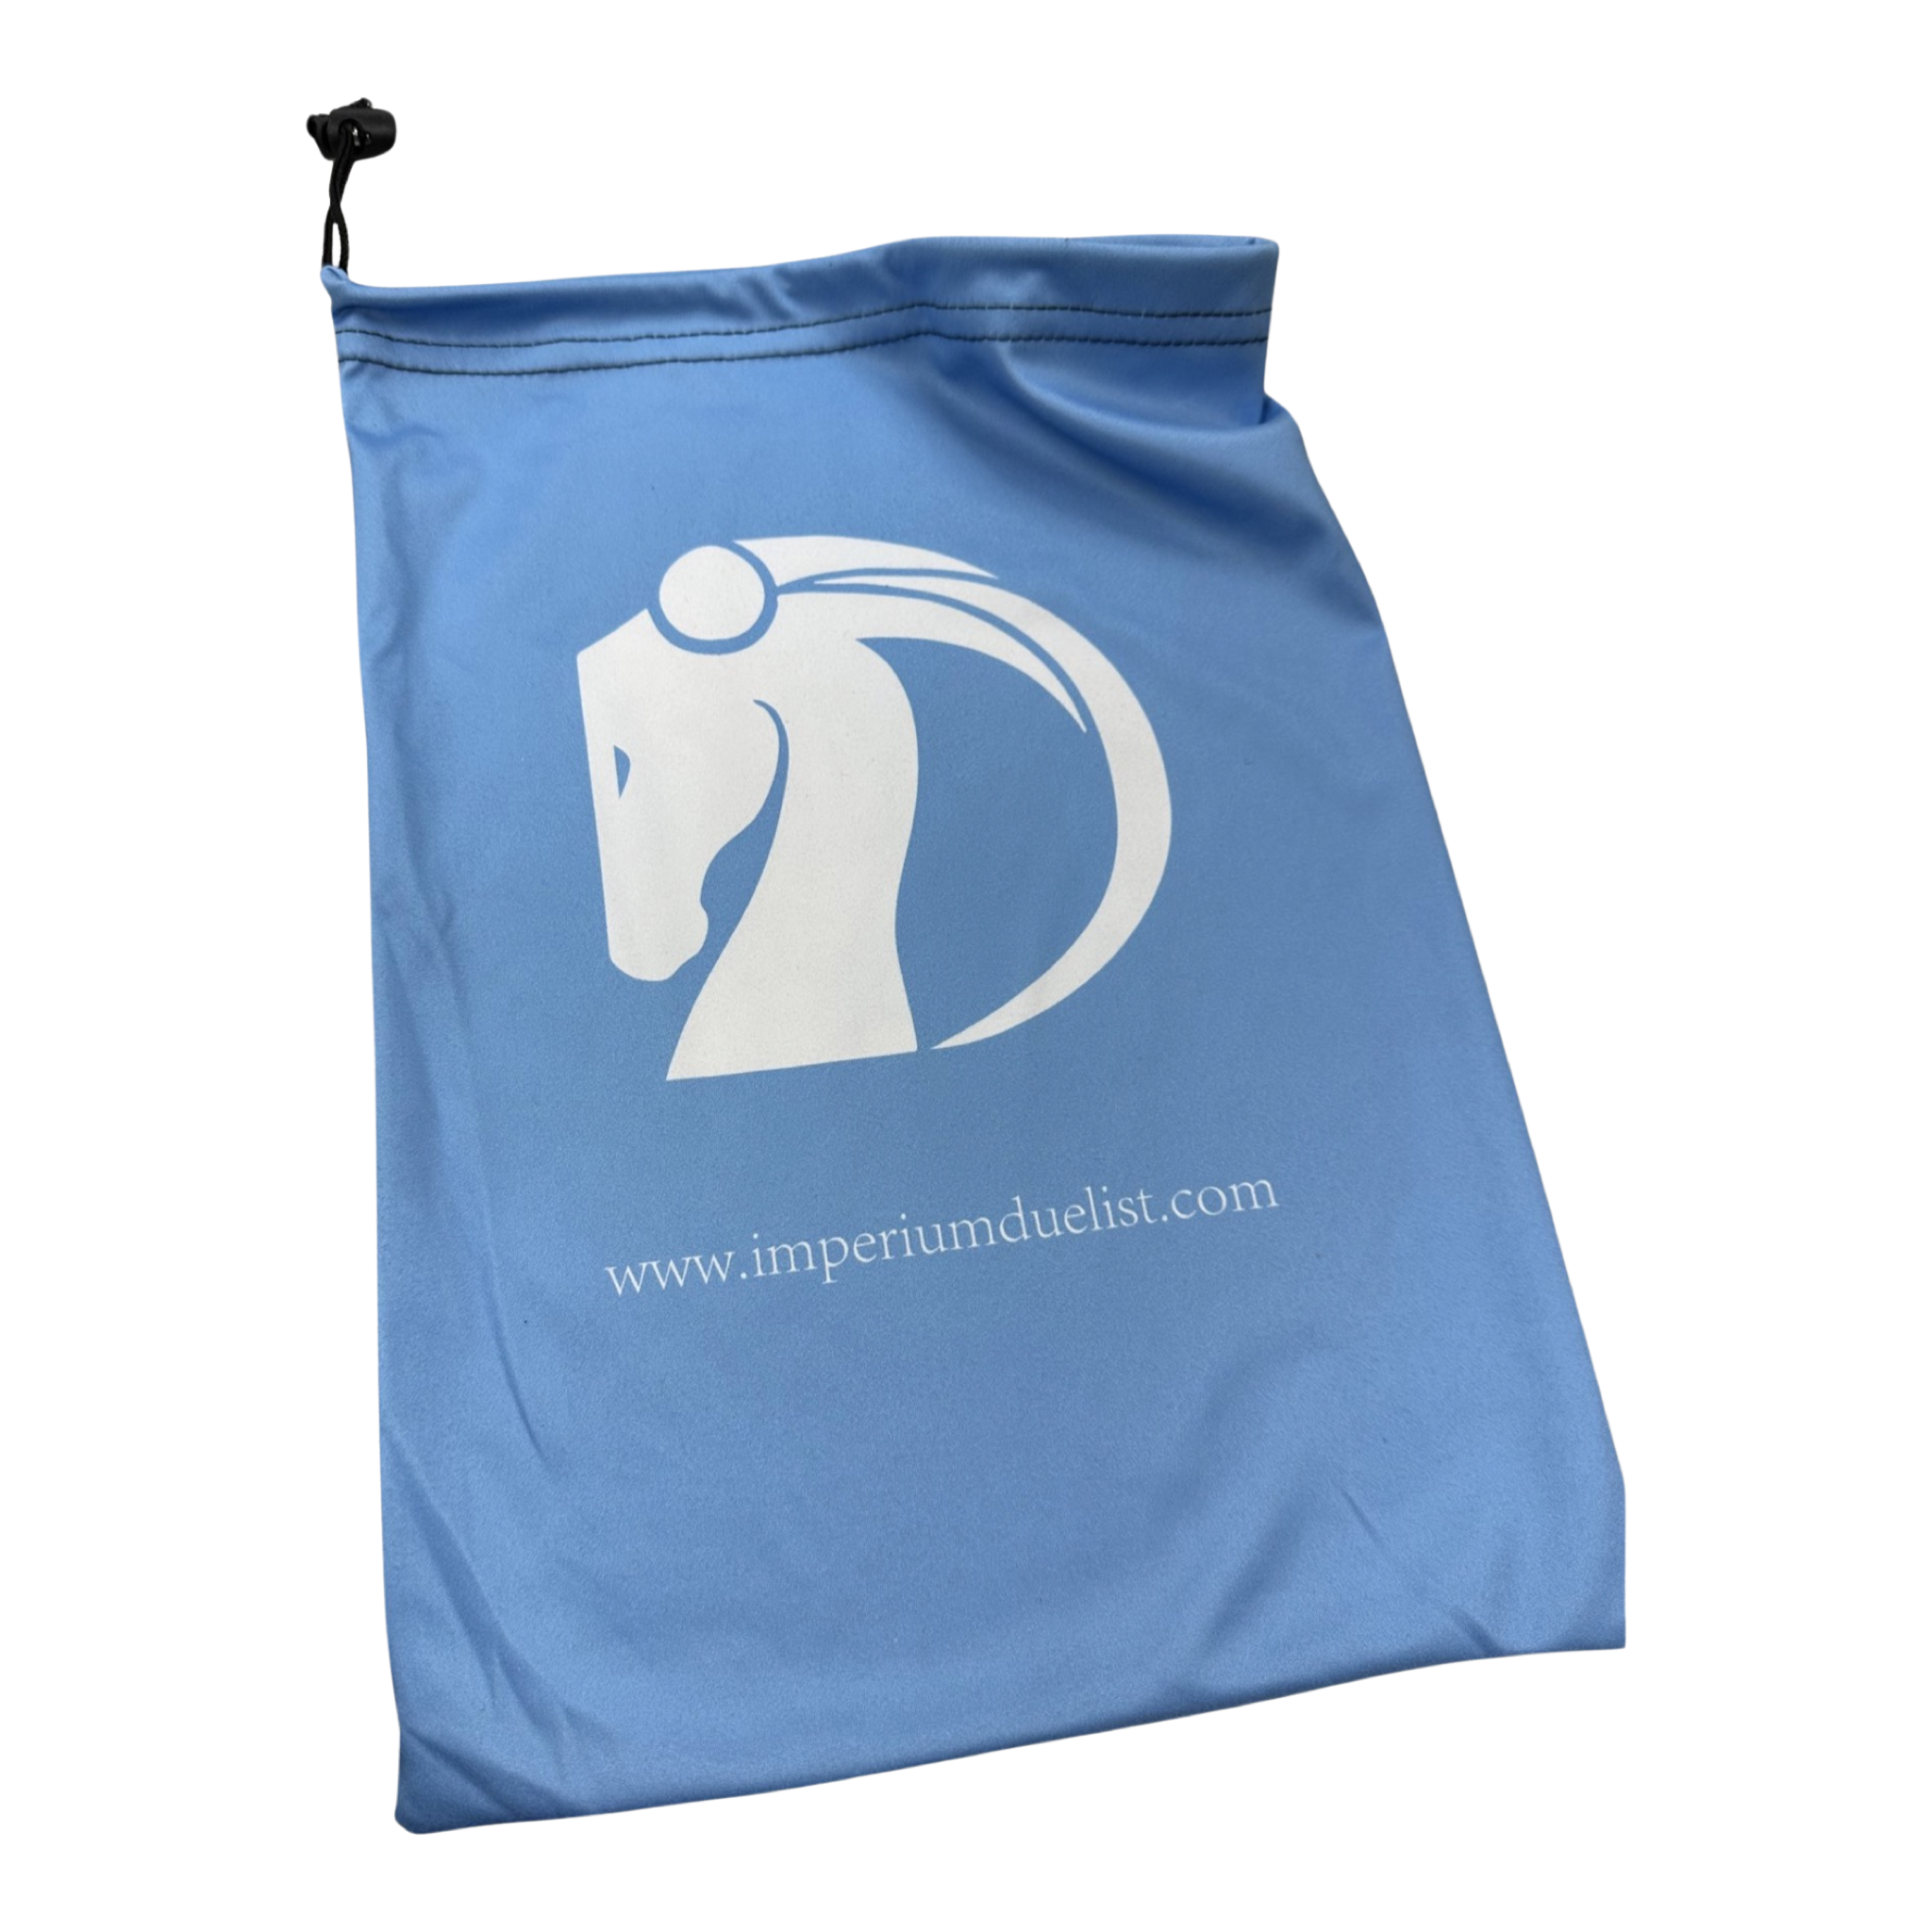 Imperium Cloth Mat Bag - “No”